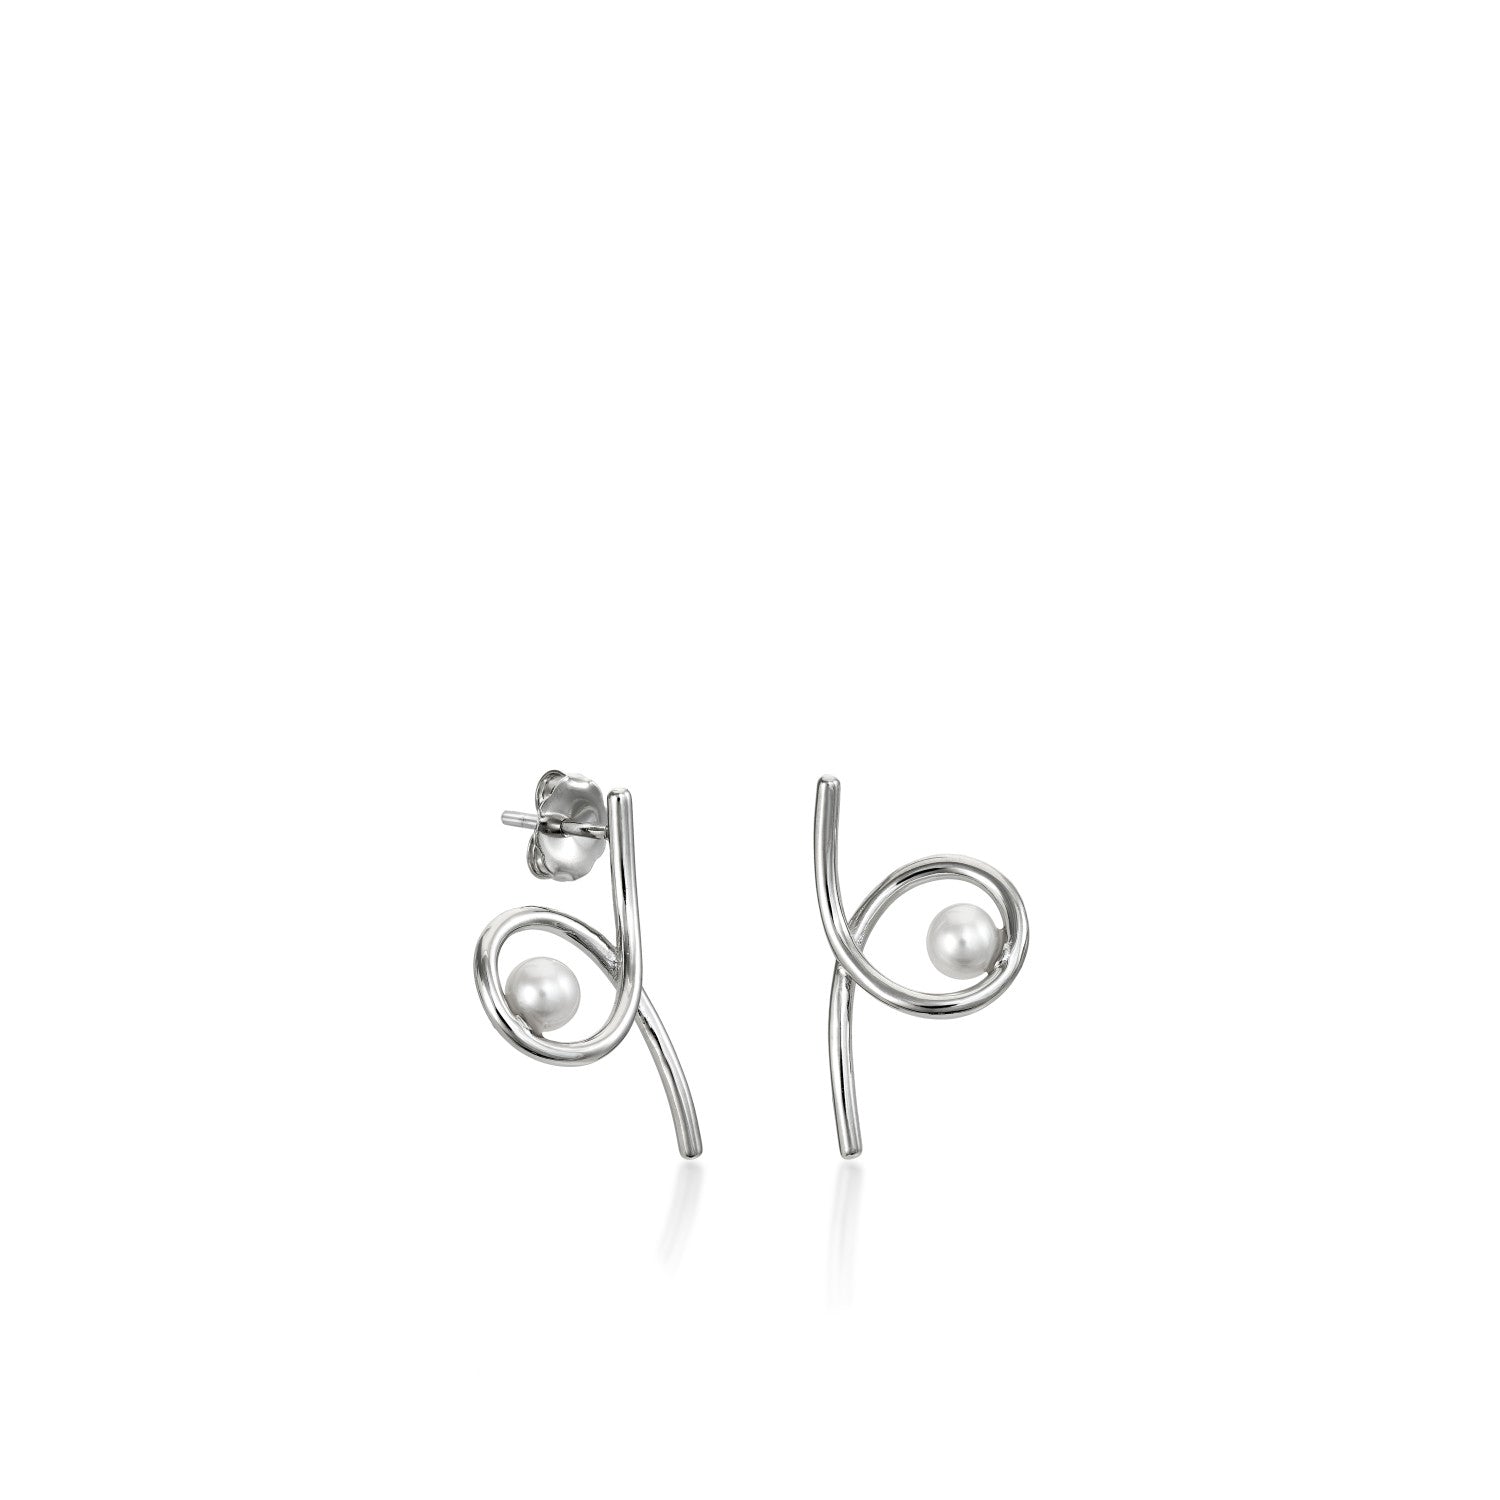 Pendientes perlas de plata diseño tirabuzón con perla